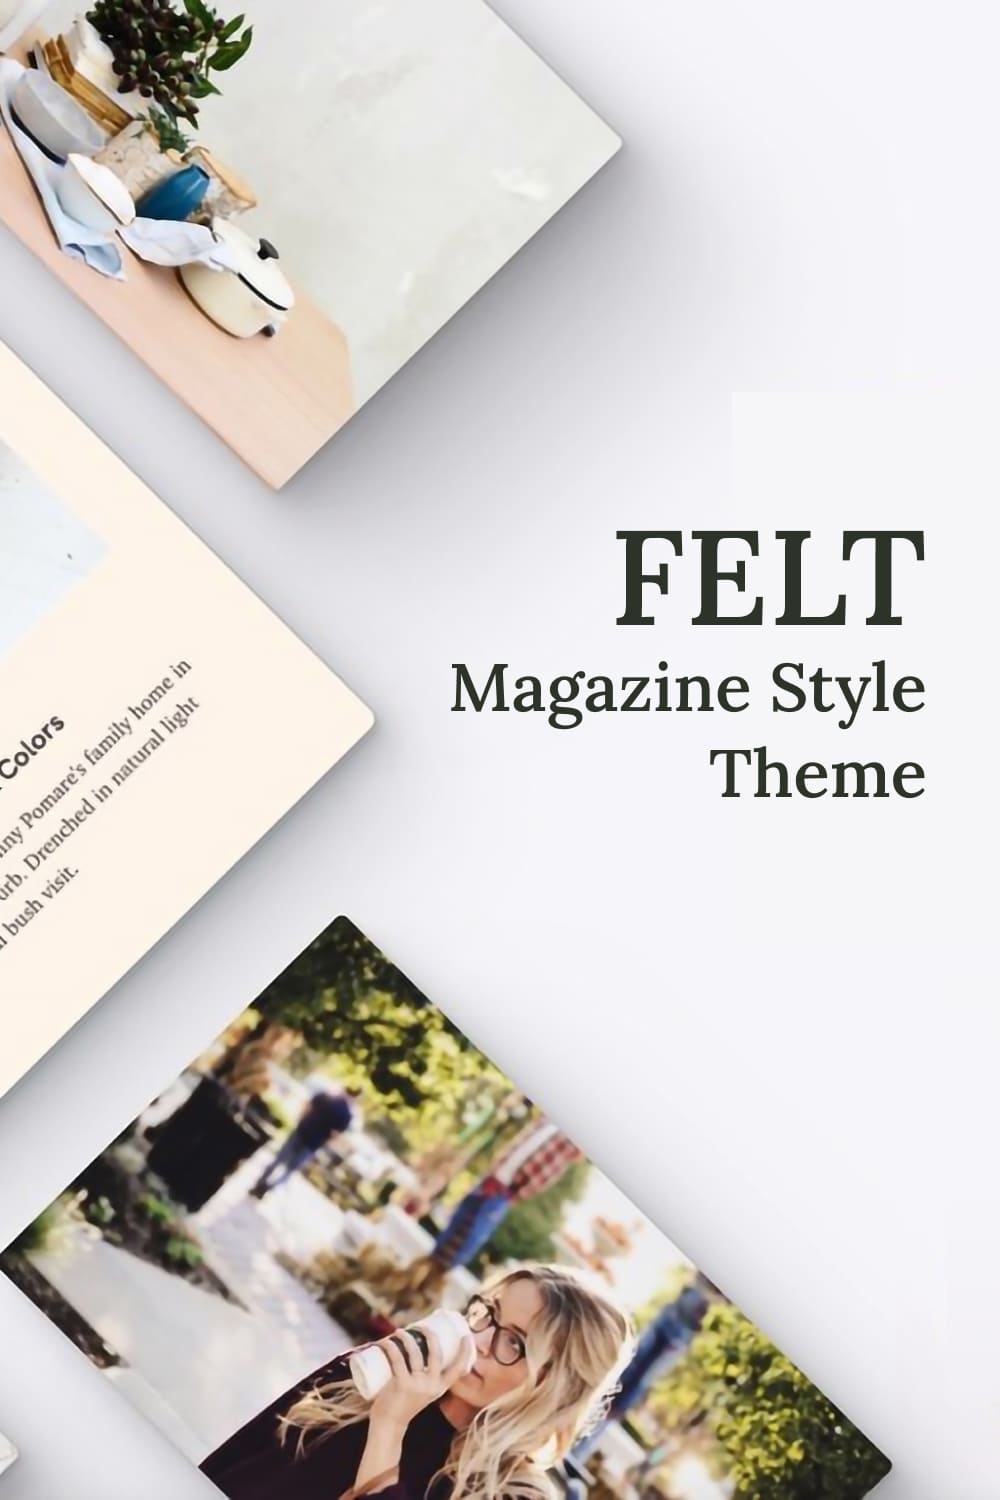 Felt - Magazine Style Theme - Pinterest.